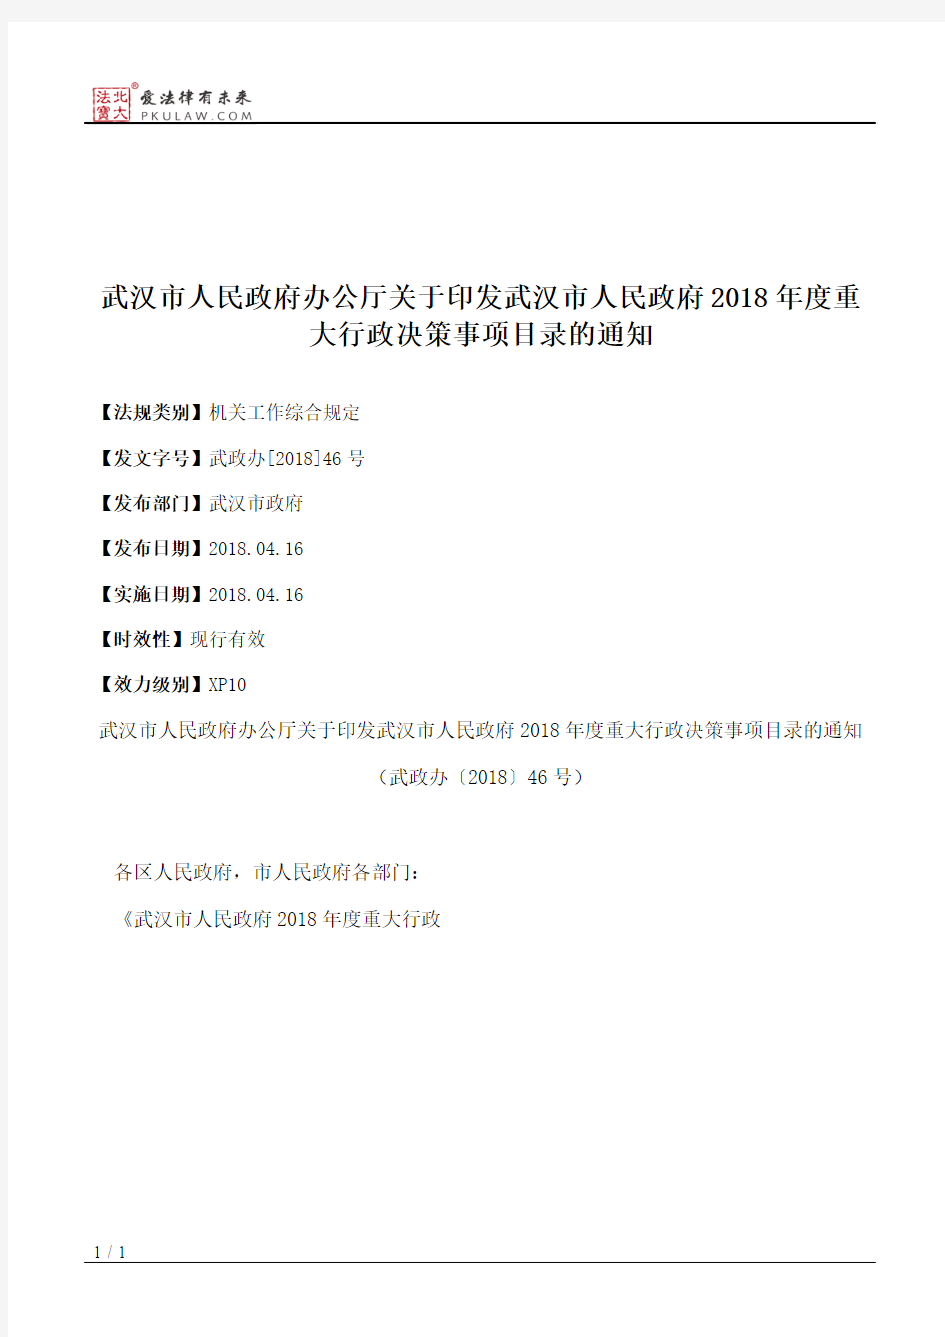 武汉市人民政府办公厅关于印发武汉市人民政府2018年度重大行政决